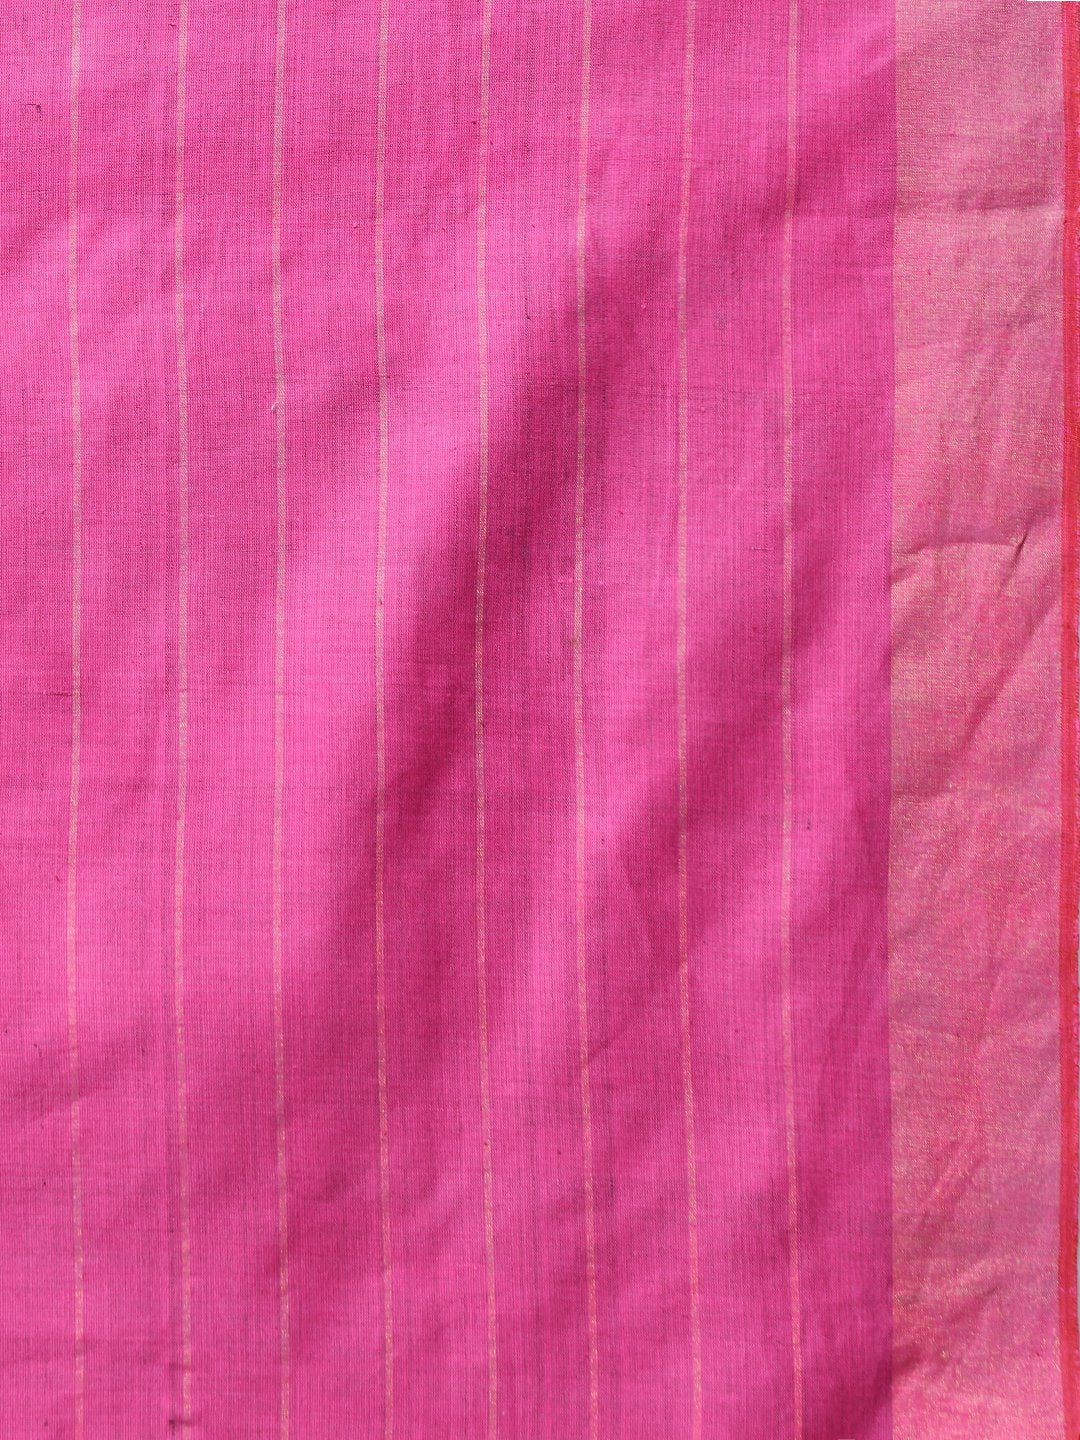 Rose pink handloom tussar silk saree